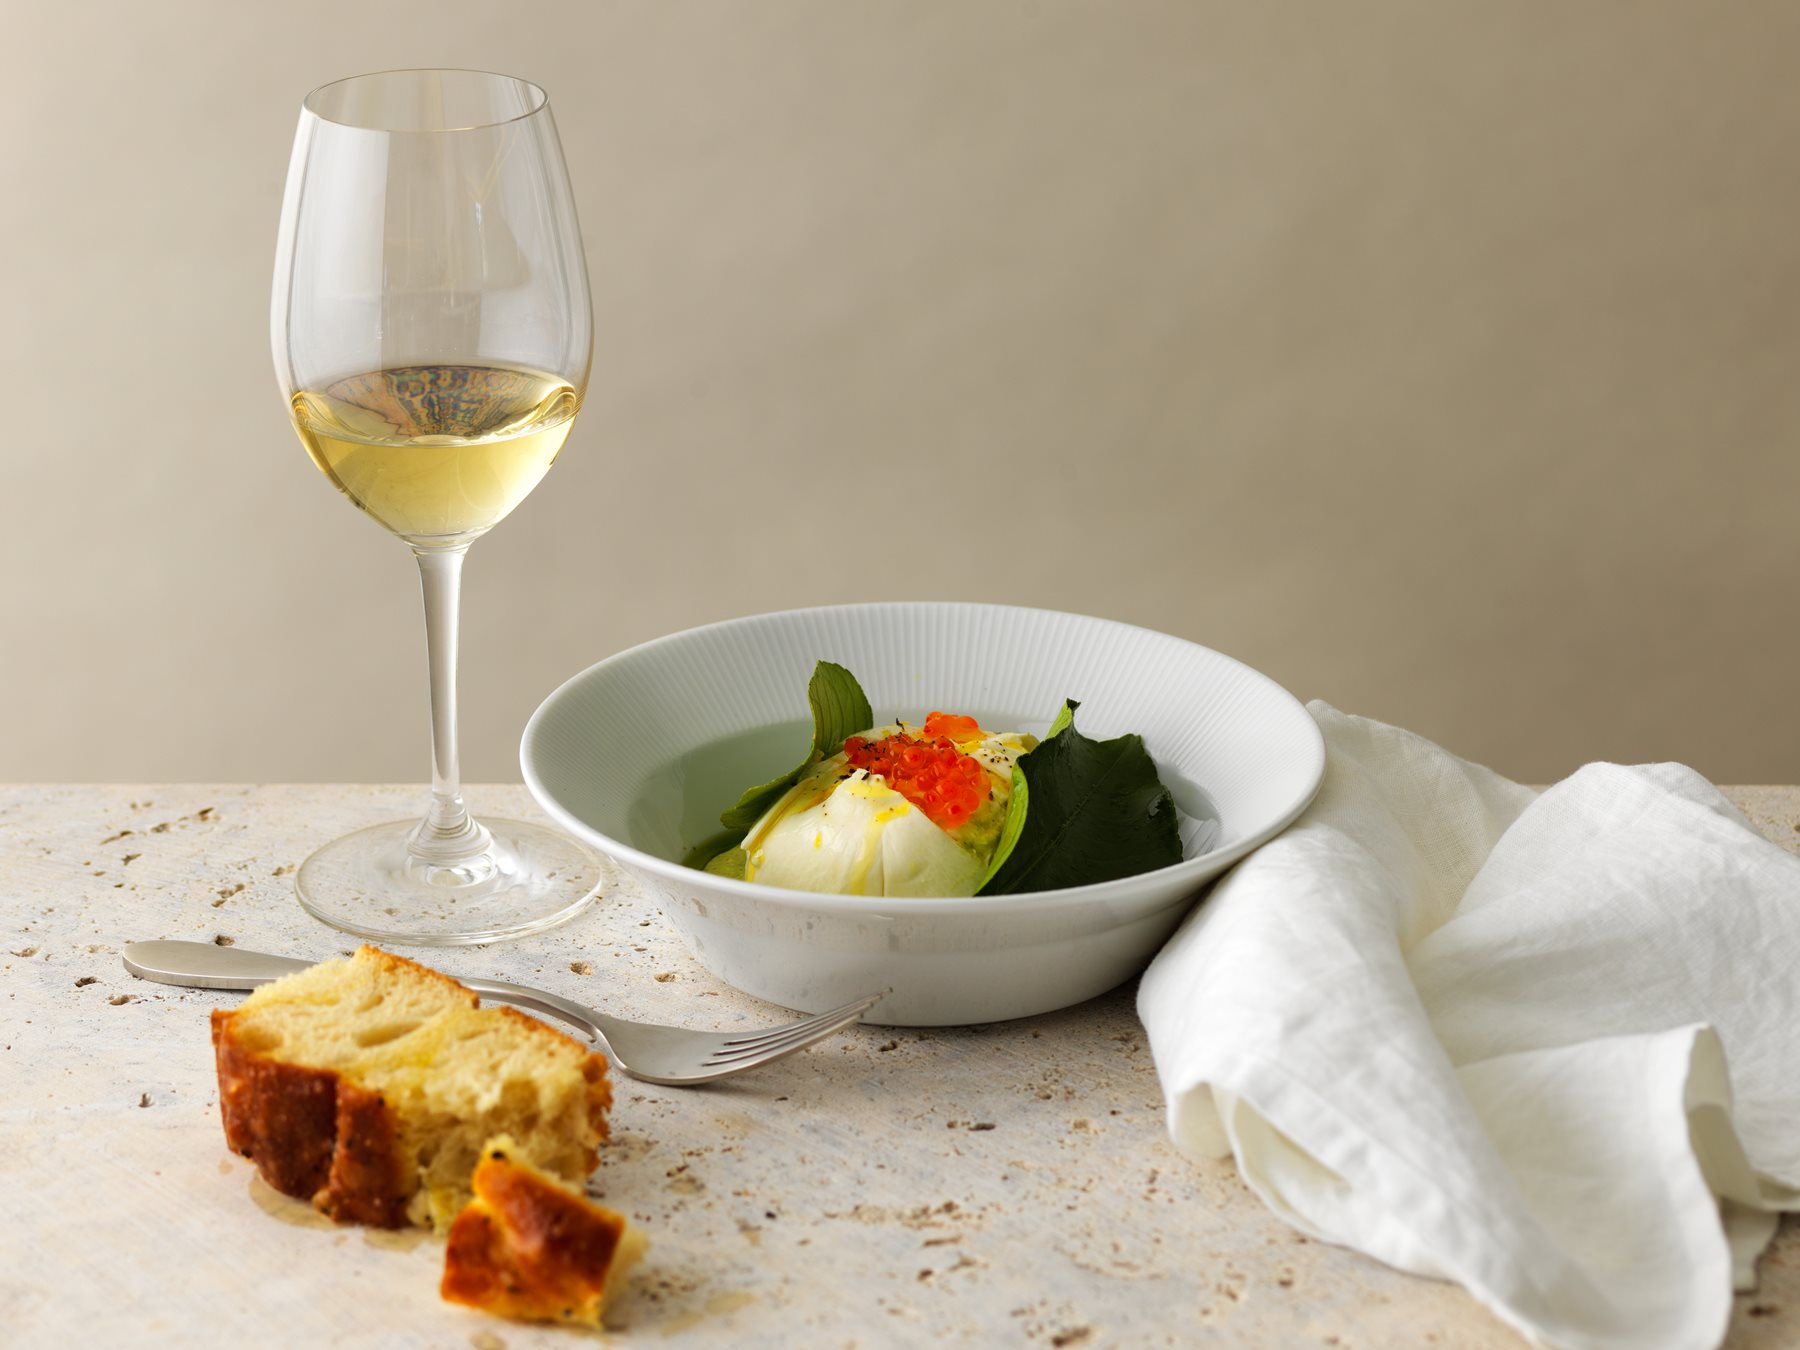 amare burrata dish with glass of white wine
